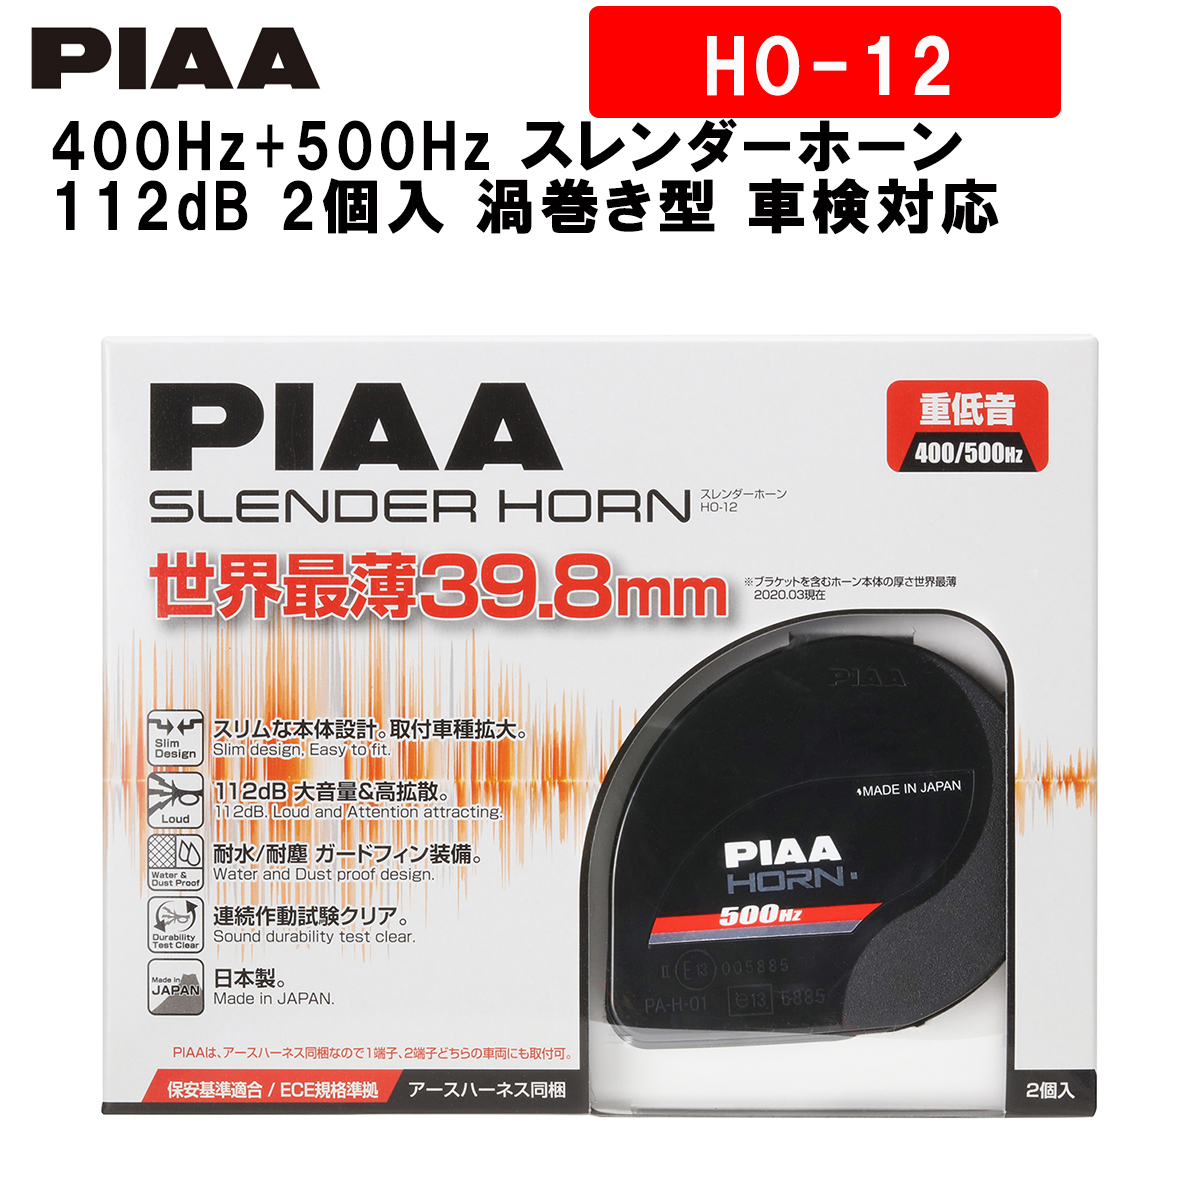 格安販売の 極薄 軽量 のおすすめホーン PIAA ホーン 400Hz+500Hz スレンダーホーン 112dB 2個入 渦巻き型 車検対応  HO-12 ピア idvn.com.vn